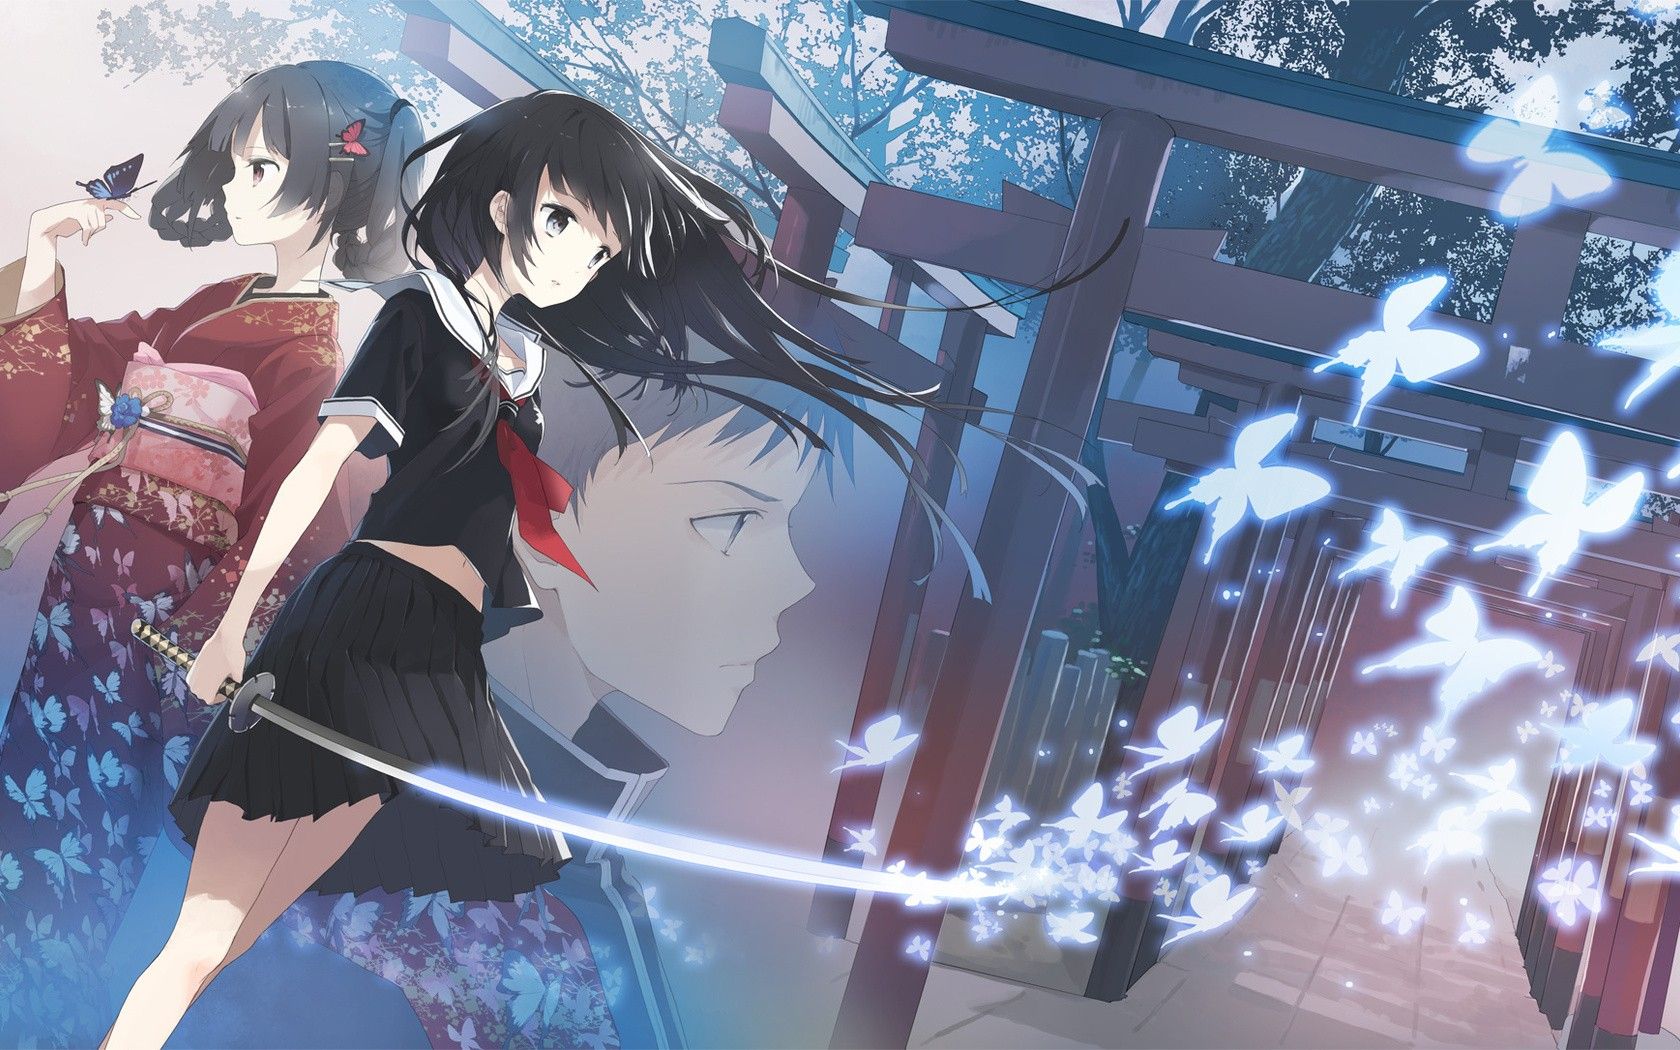 #anime, #sword, #schoolgirl, #anime girls, wallpaper